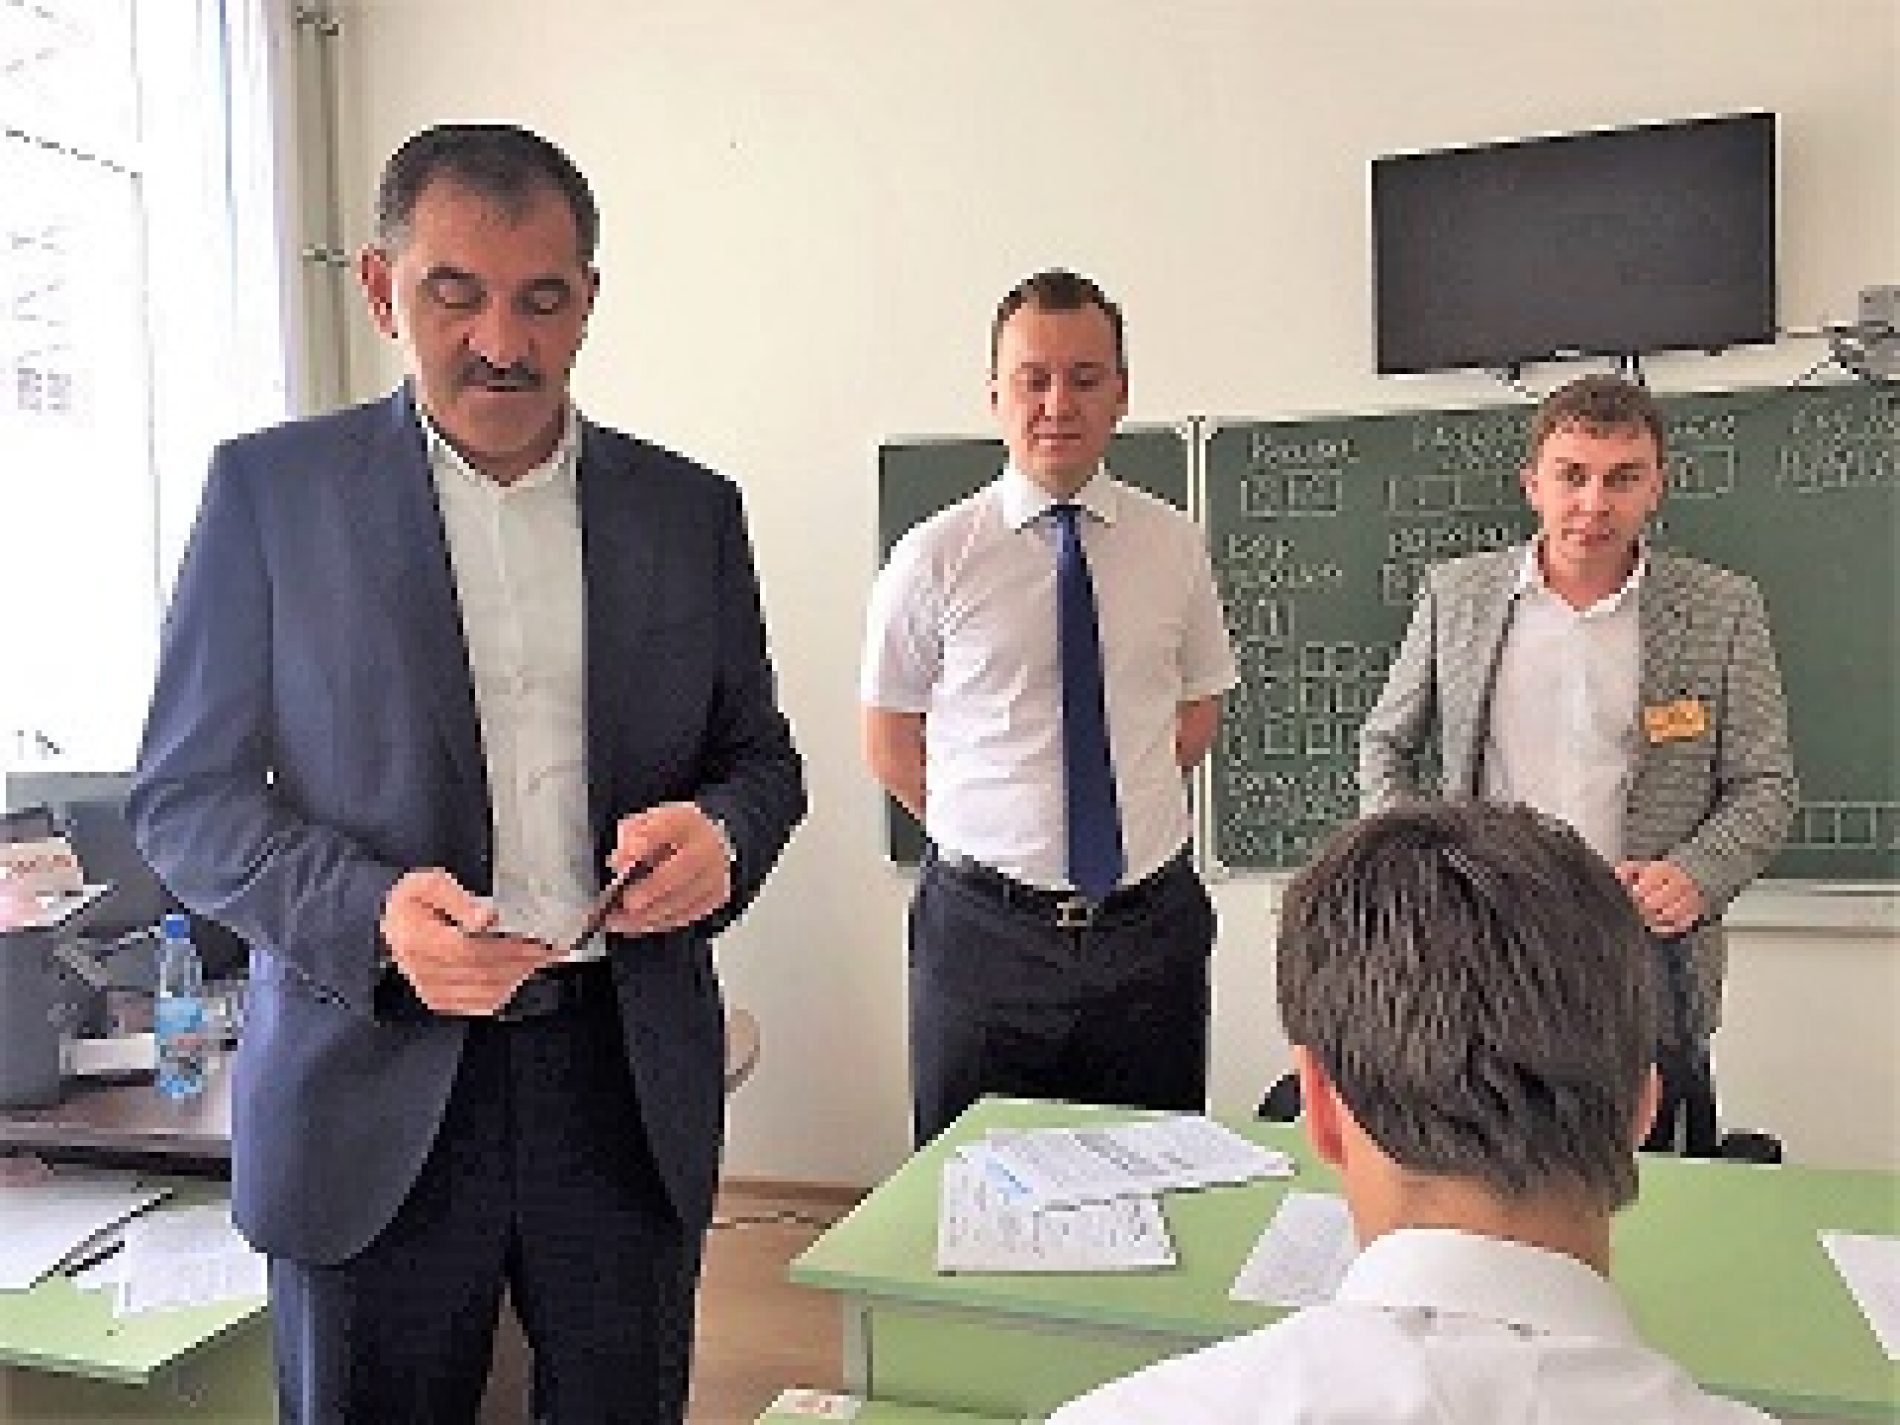 Глава региона посетил пункт проведения экзамена в Назрани